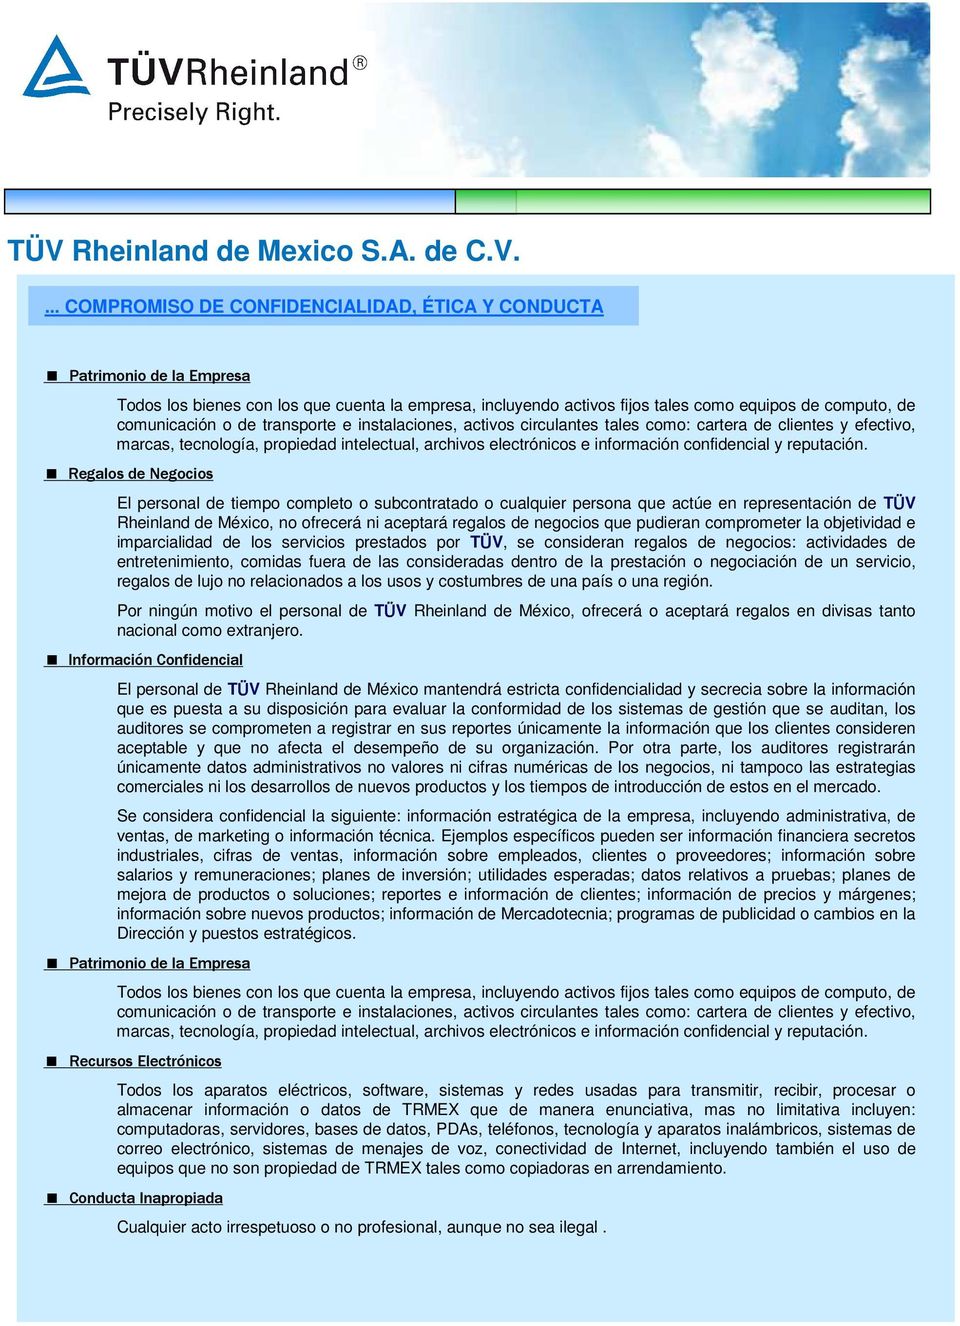 Regalos de Negocios El personal de tiempo completo o subcontratado o cualquier persona que actúe en representación de TÜV Rheinland de México, no ofrecerá ni aceptará regalos de negocios que pudieran